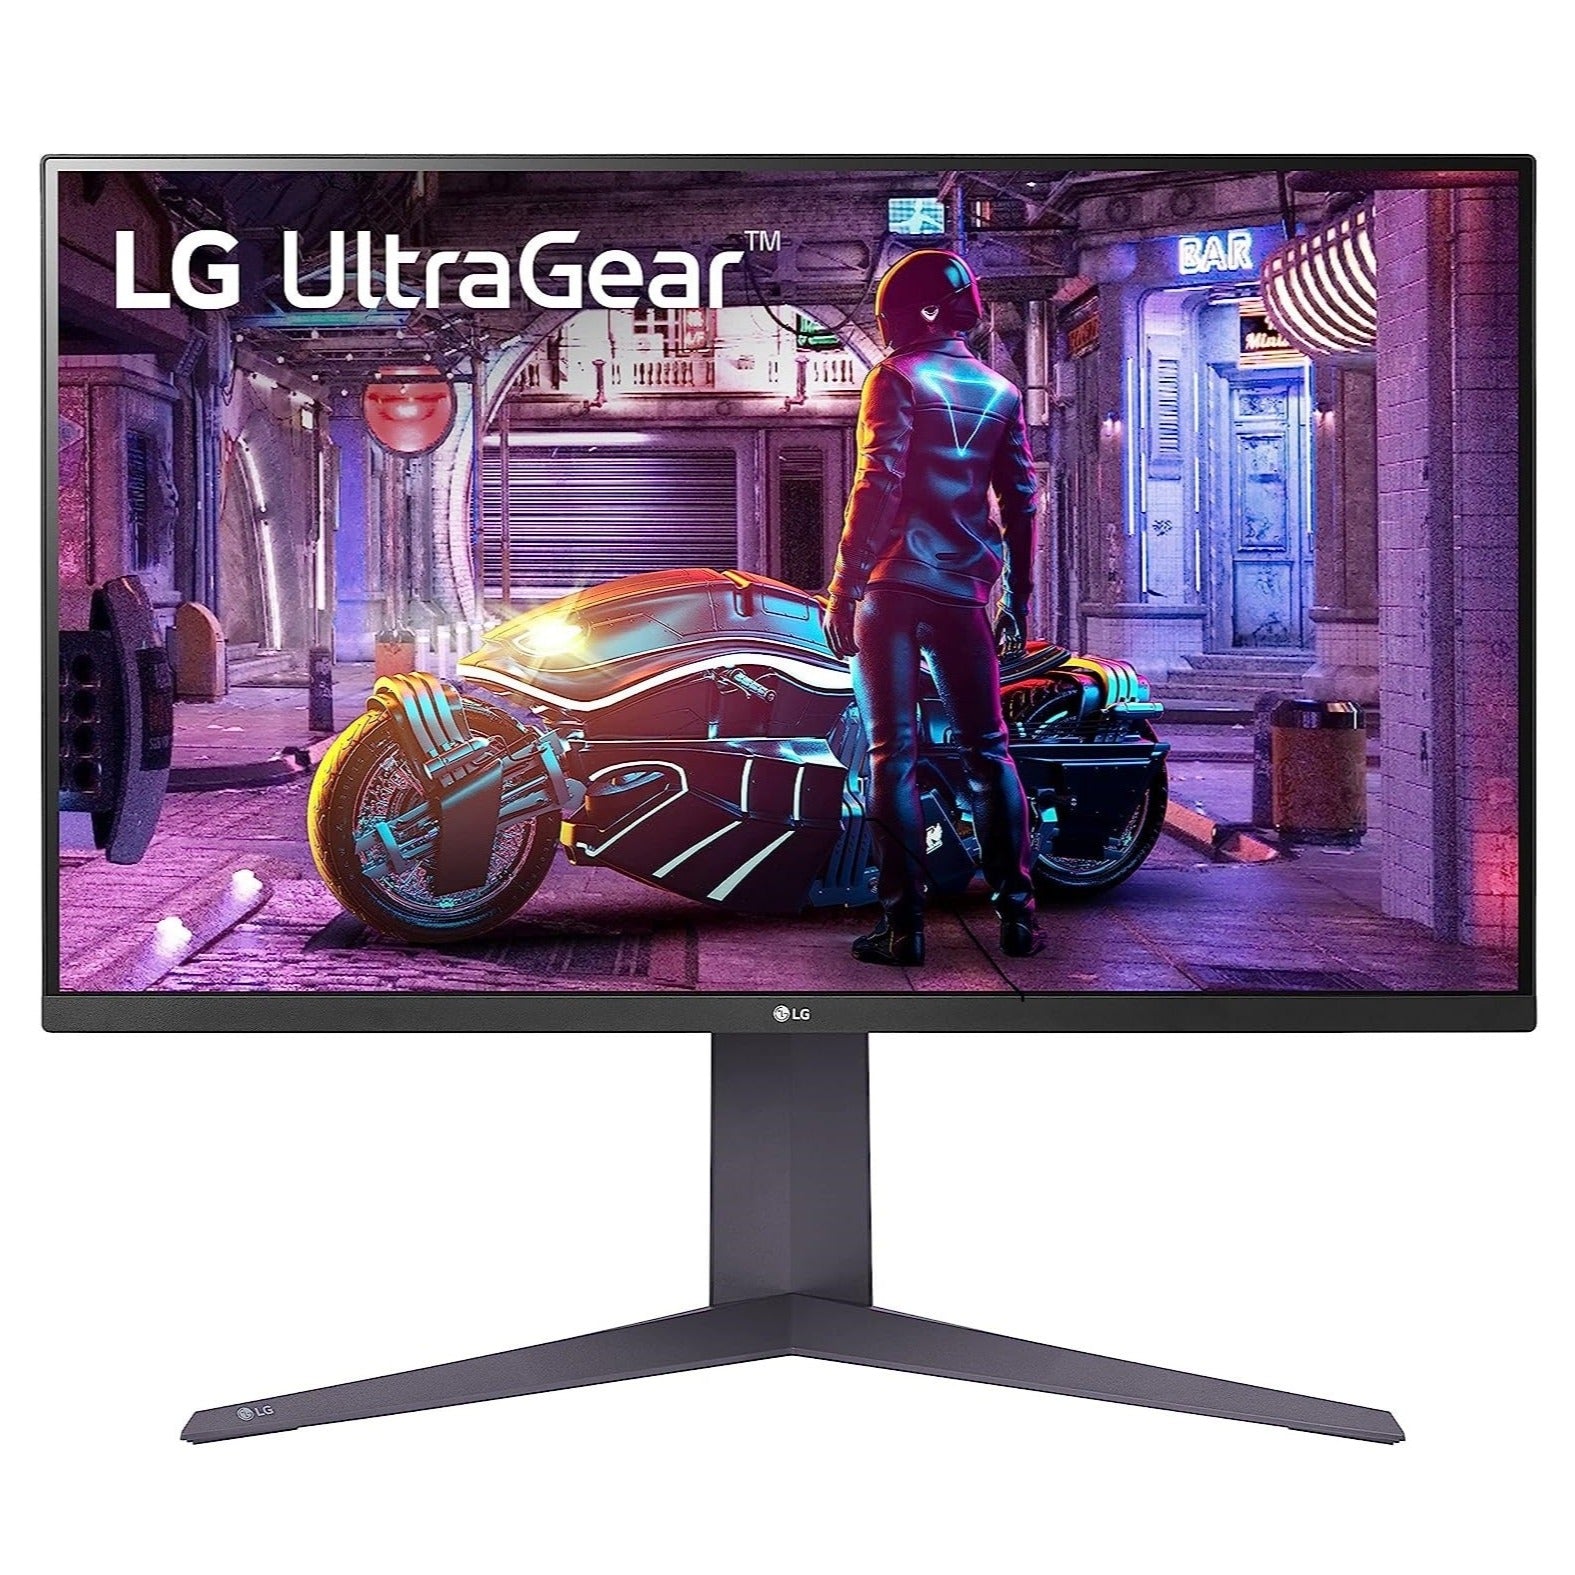 ال جي (32GQ750-B) شاشة الألعاب UltraGear™‎ بدقة UHD 4K، مقاس 31.5 بوصة بتقنية HDR10